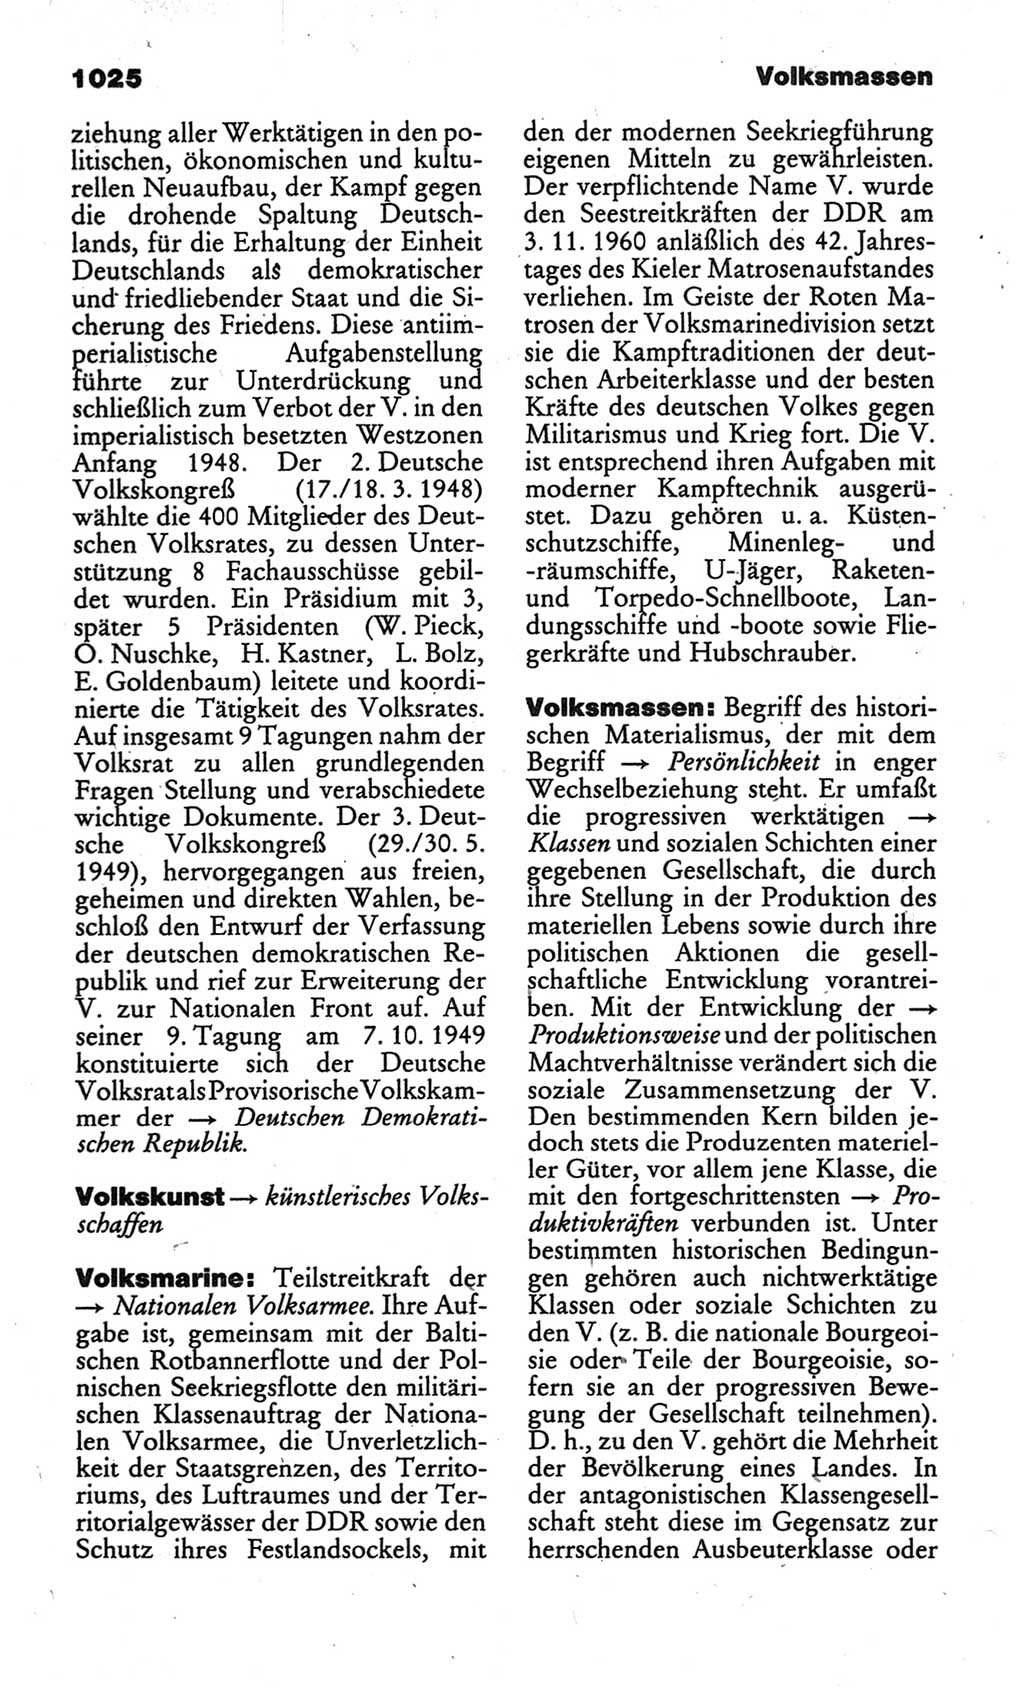 Kleines politisches Wörterbuch [Deutsche Demokratische Republik (DDR)] 1986, Seite 1025 (Kl. pol. Wb. DDR 1986, S. 1025)